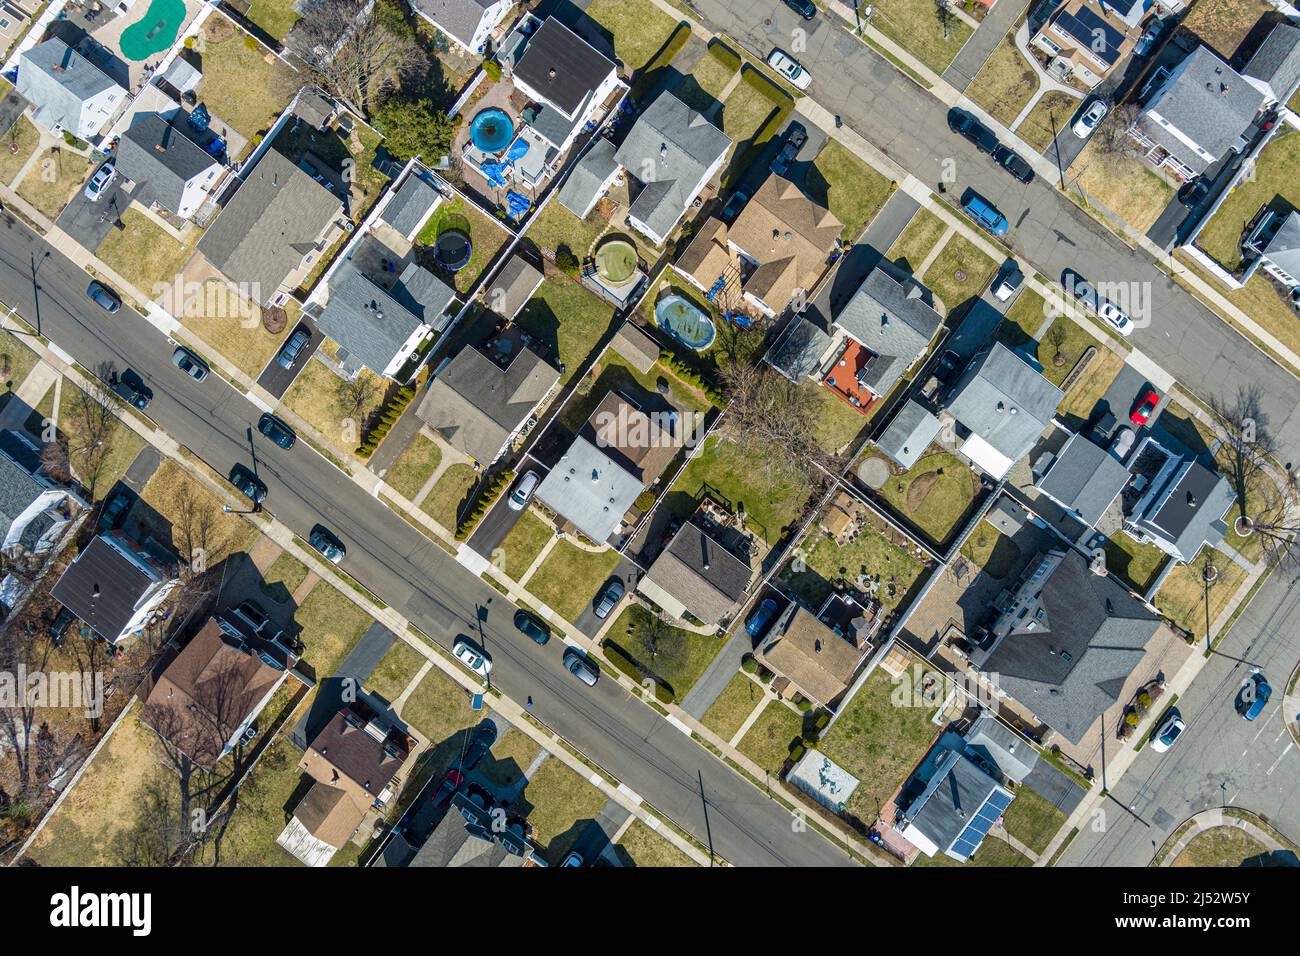 Vue aérienne du quartier de Philadelphie, États-Unis Banque D'Images